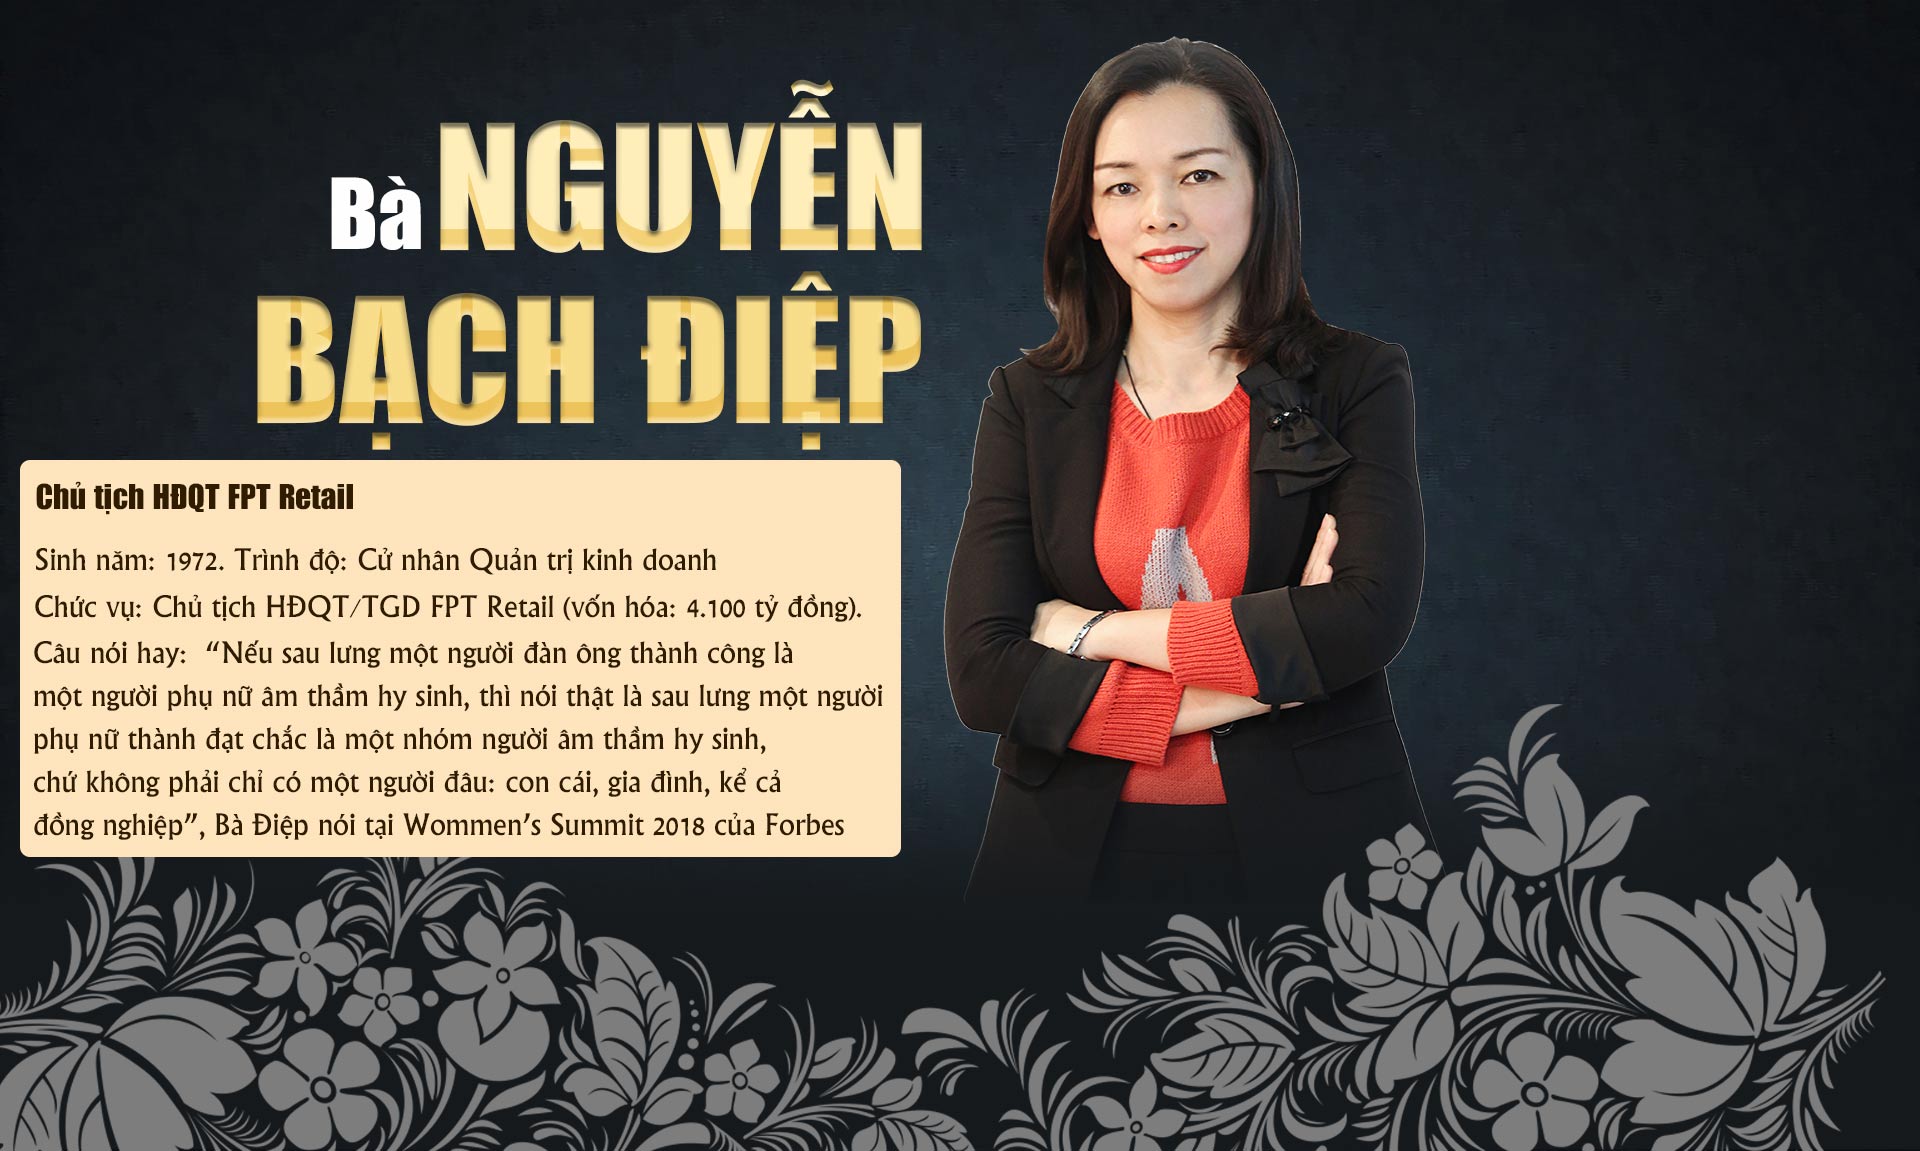 10 phụ nữ Việt gây choáng bởi sự giàu có, giỏi giang và quyền lực - 10